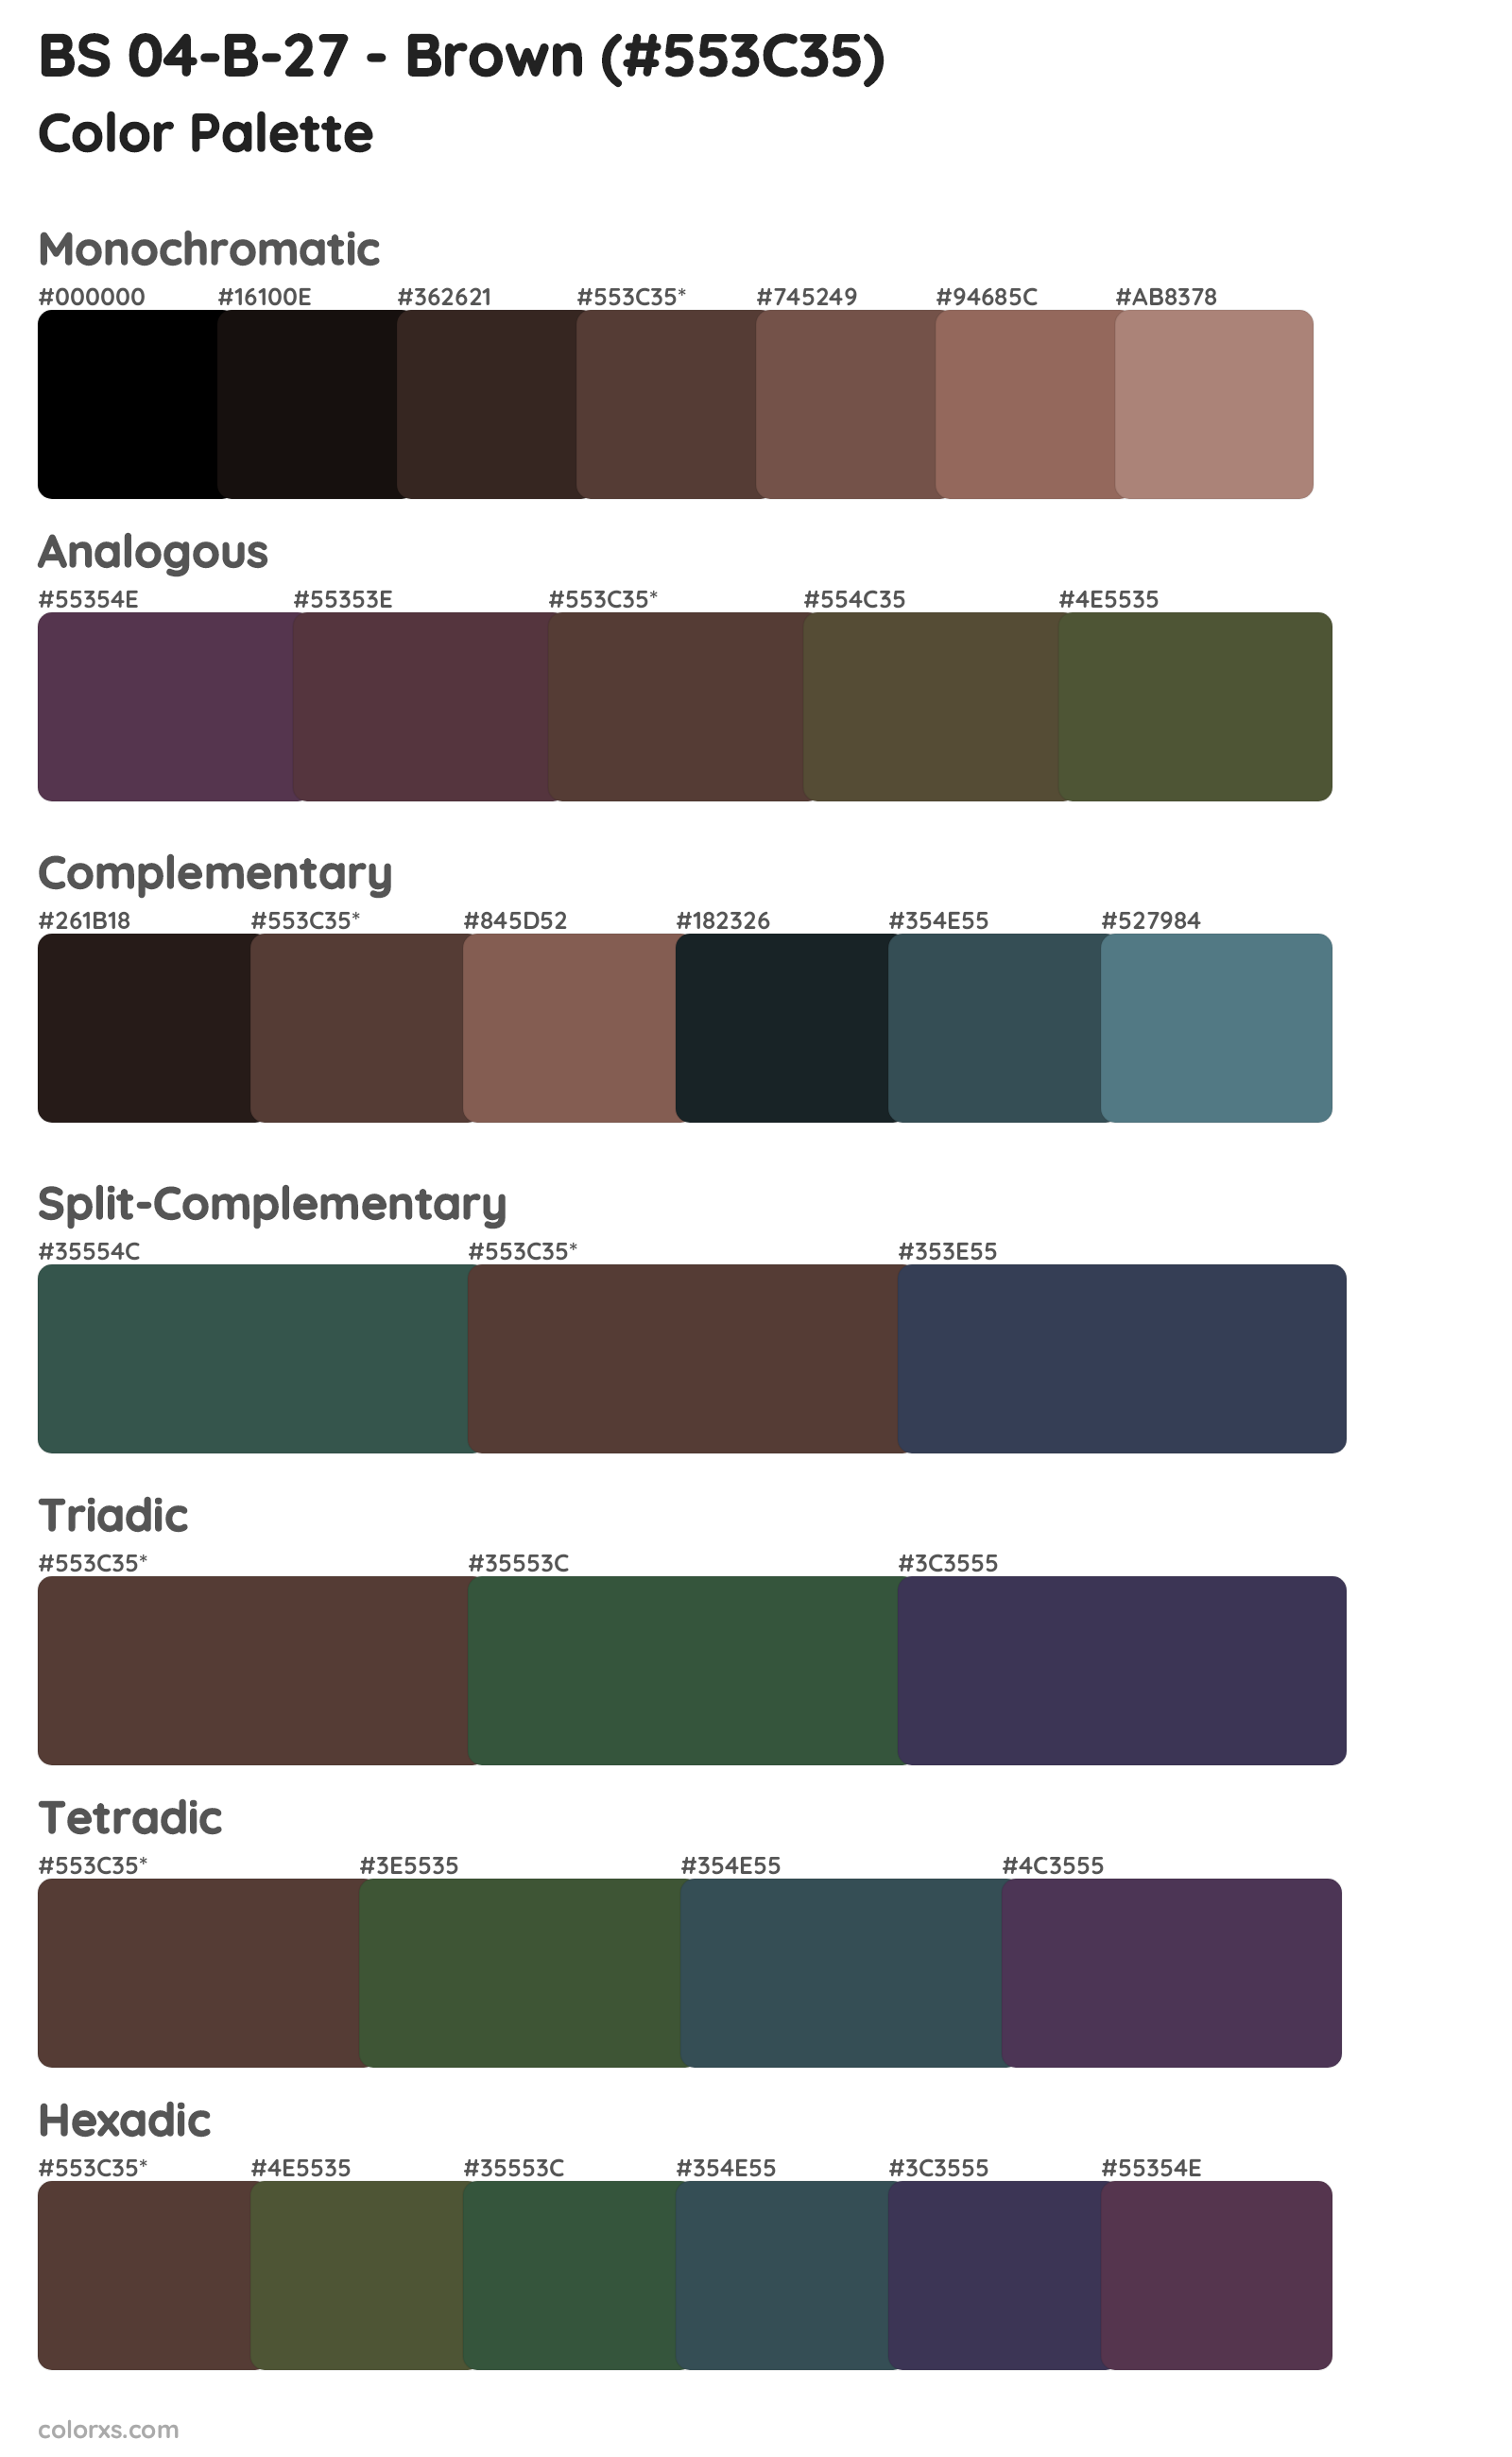 BS 04-B-27 - Brown Color Scheme Palettes